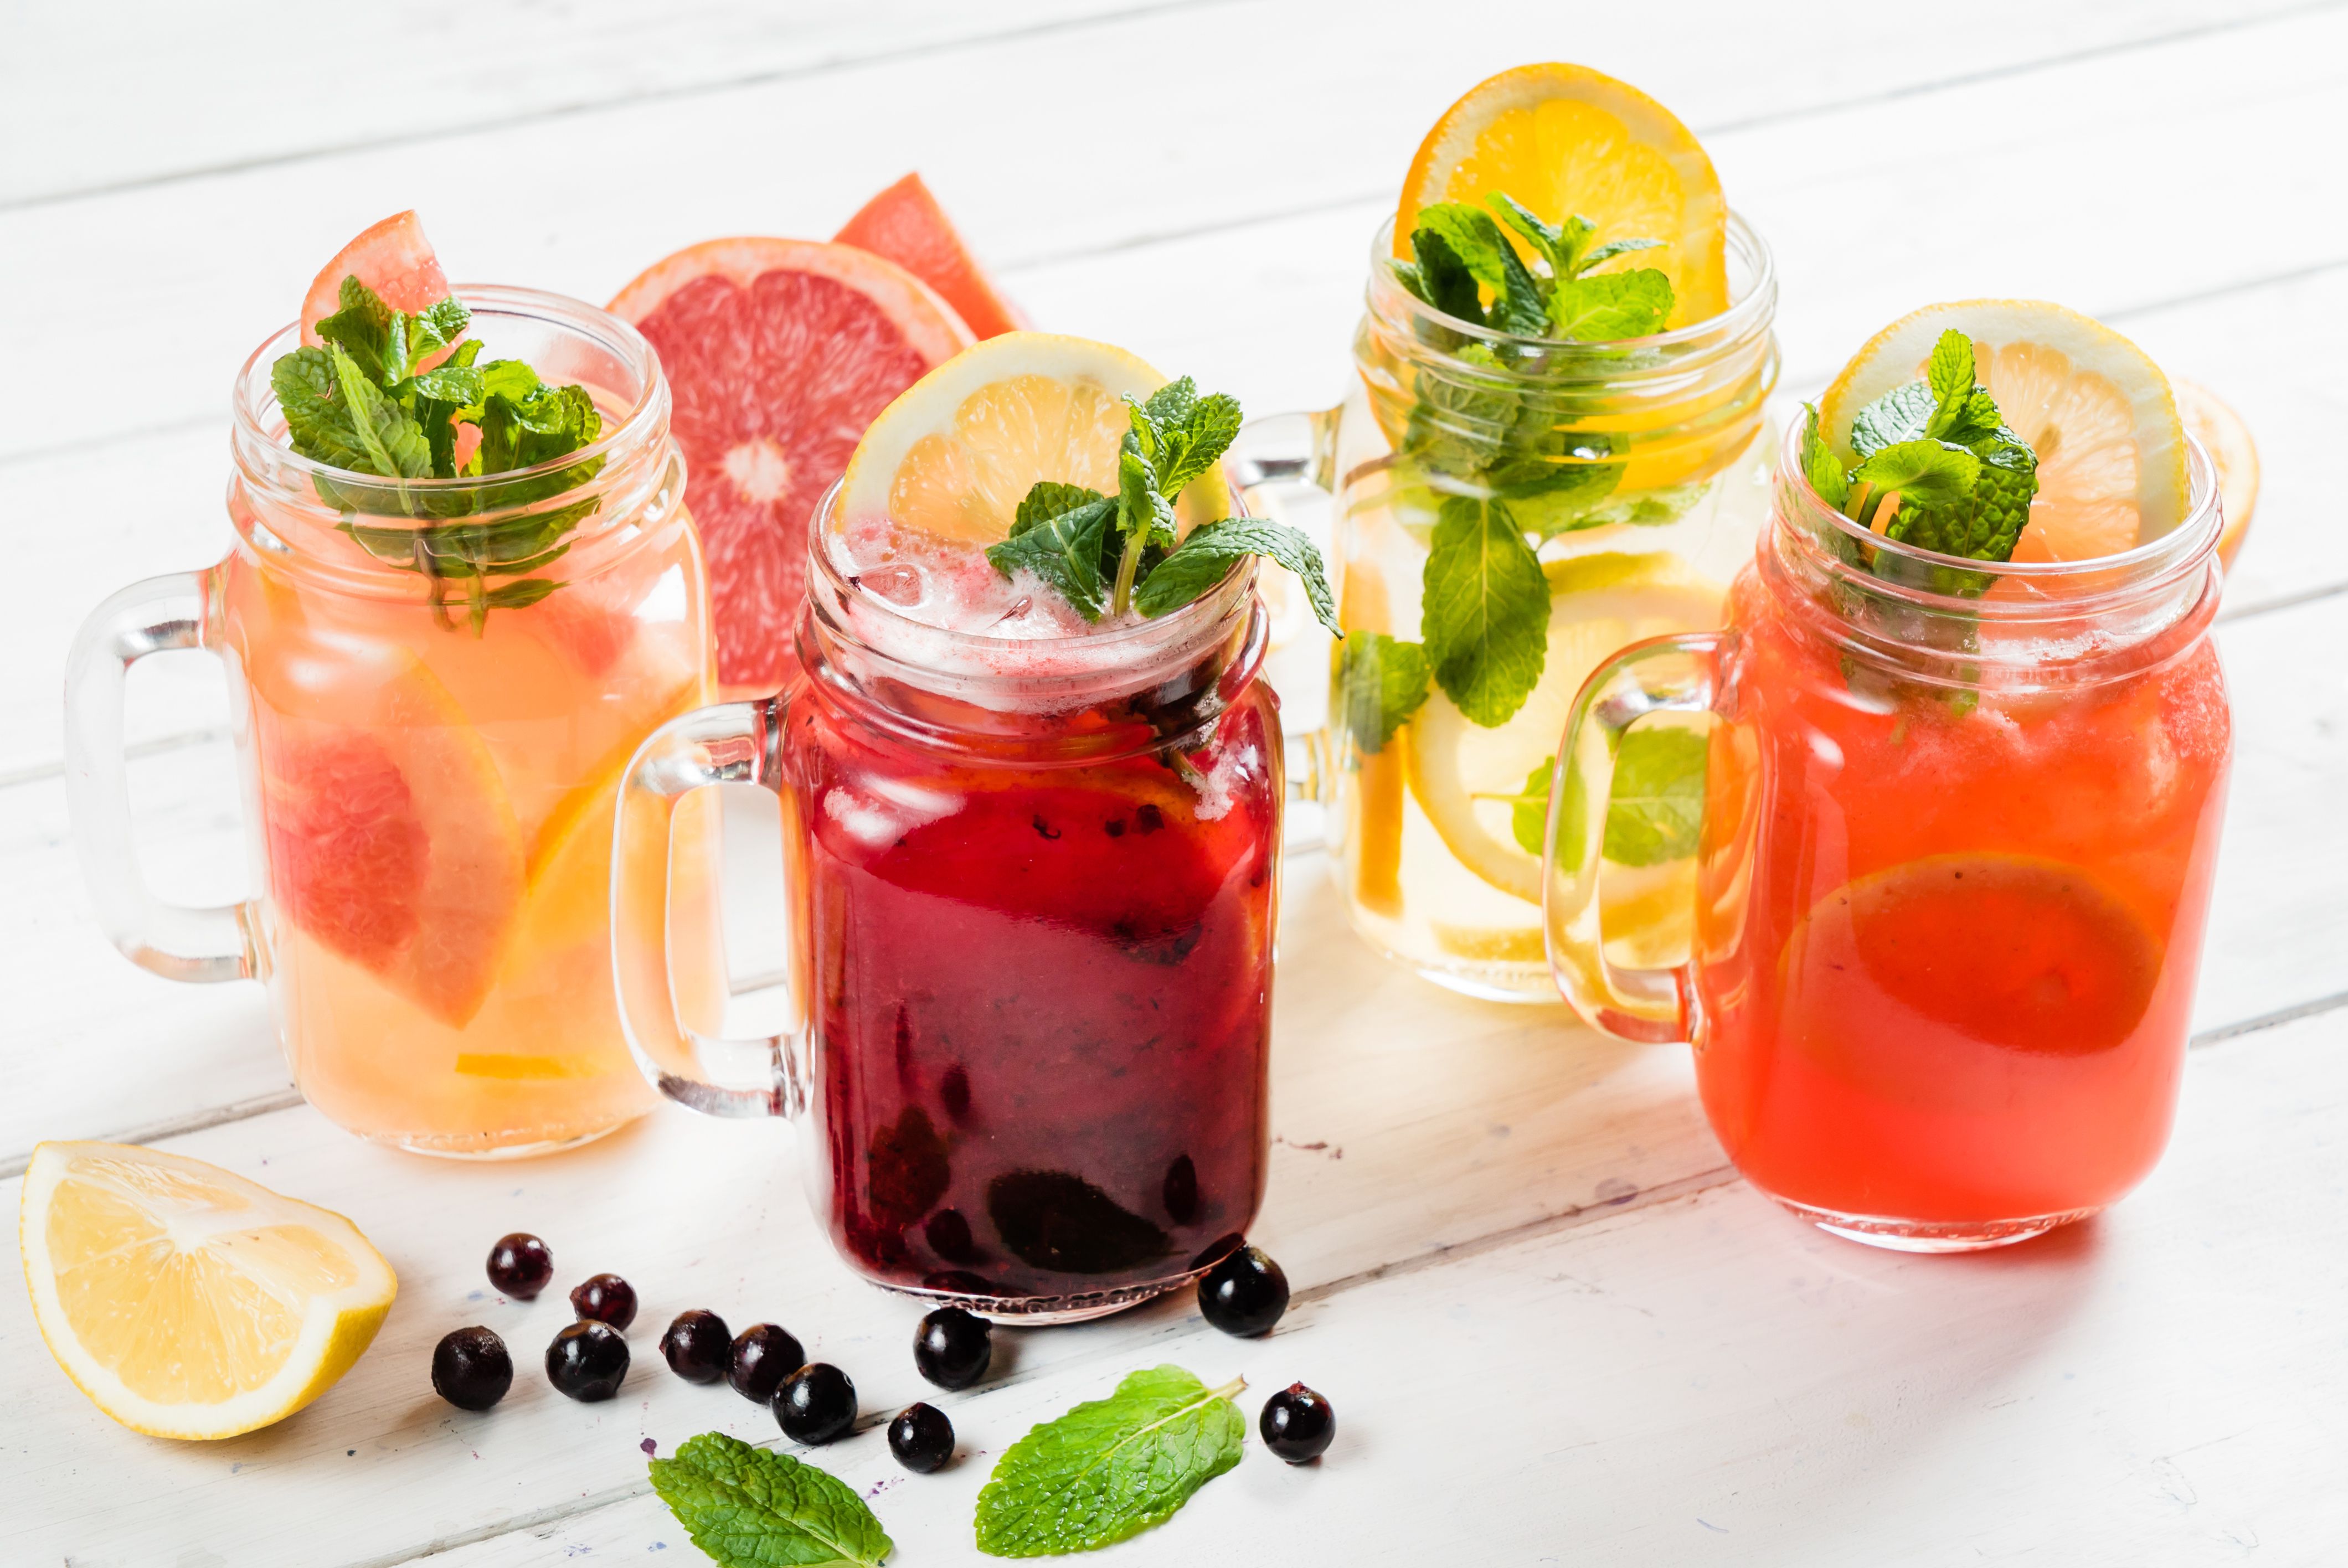 Pet ljetnih pića koja će vas osvježiti, ali i pomoći na putu prema ravnom trbuhu